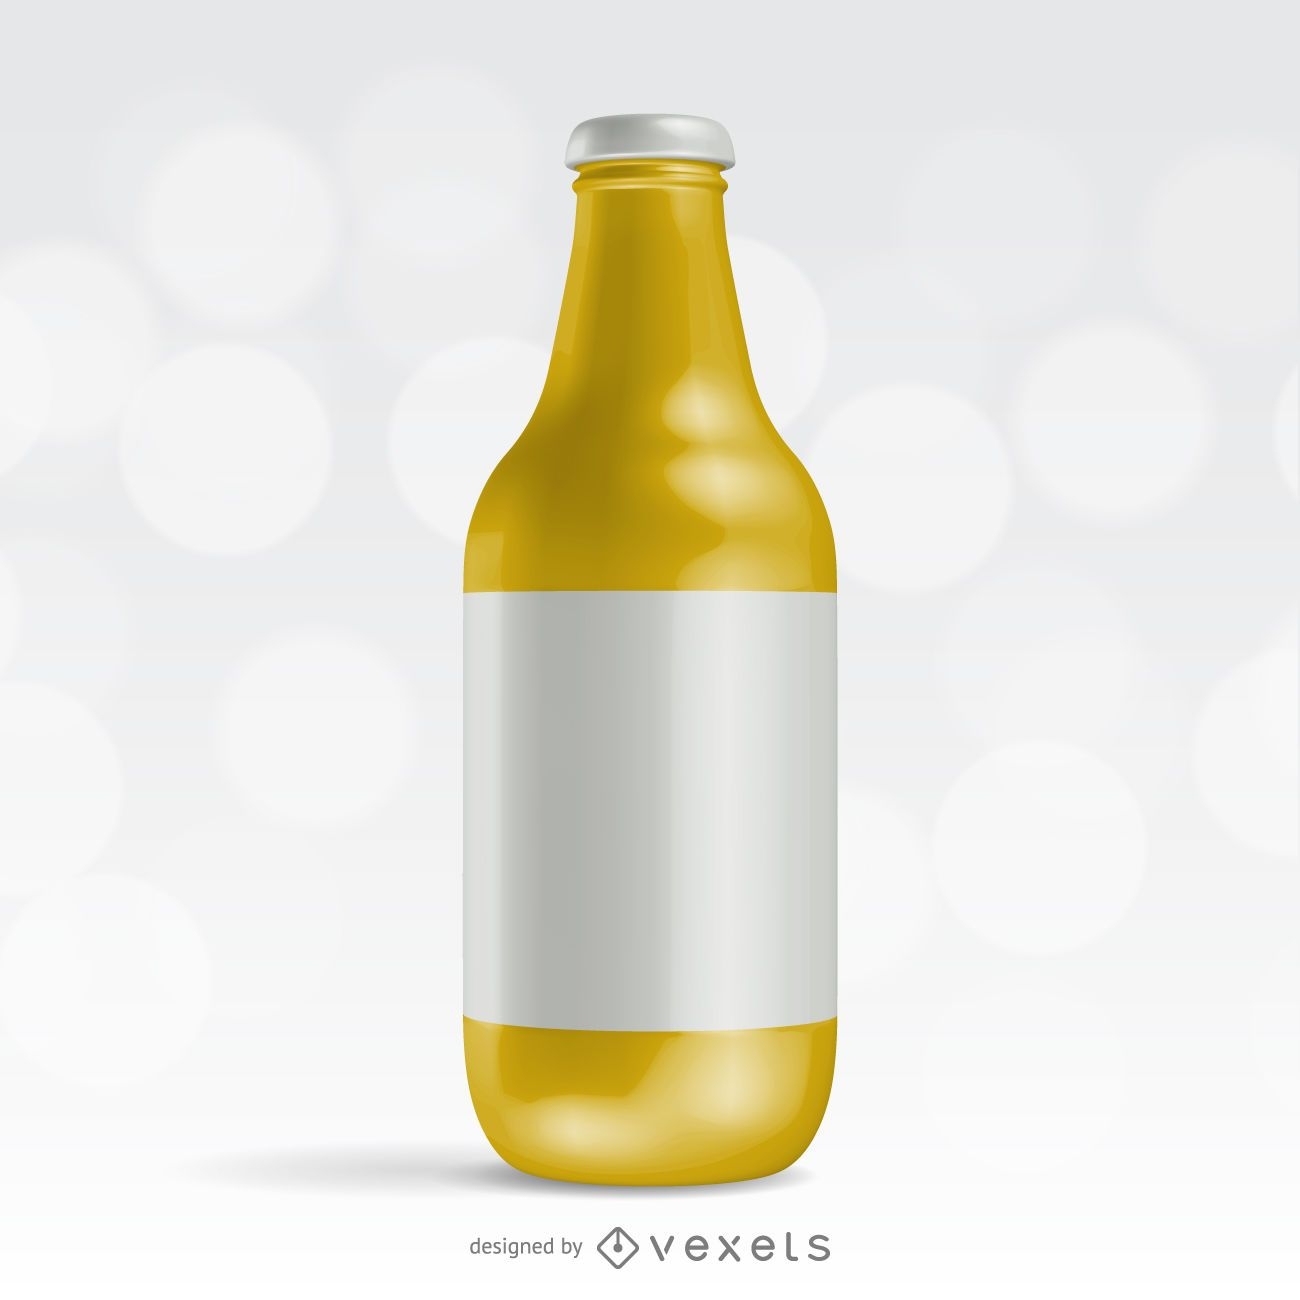 Diseño de envases de botellas realistas